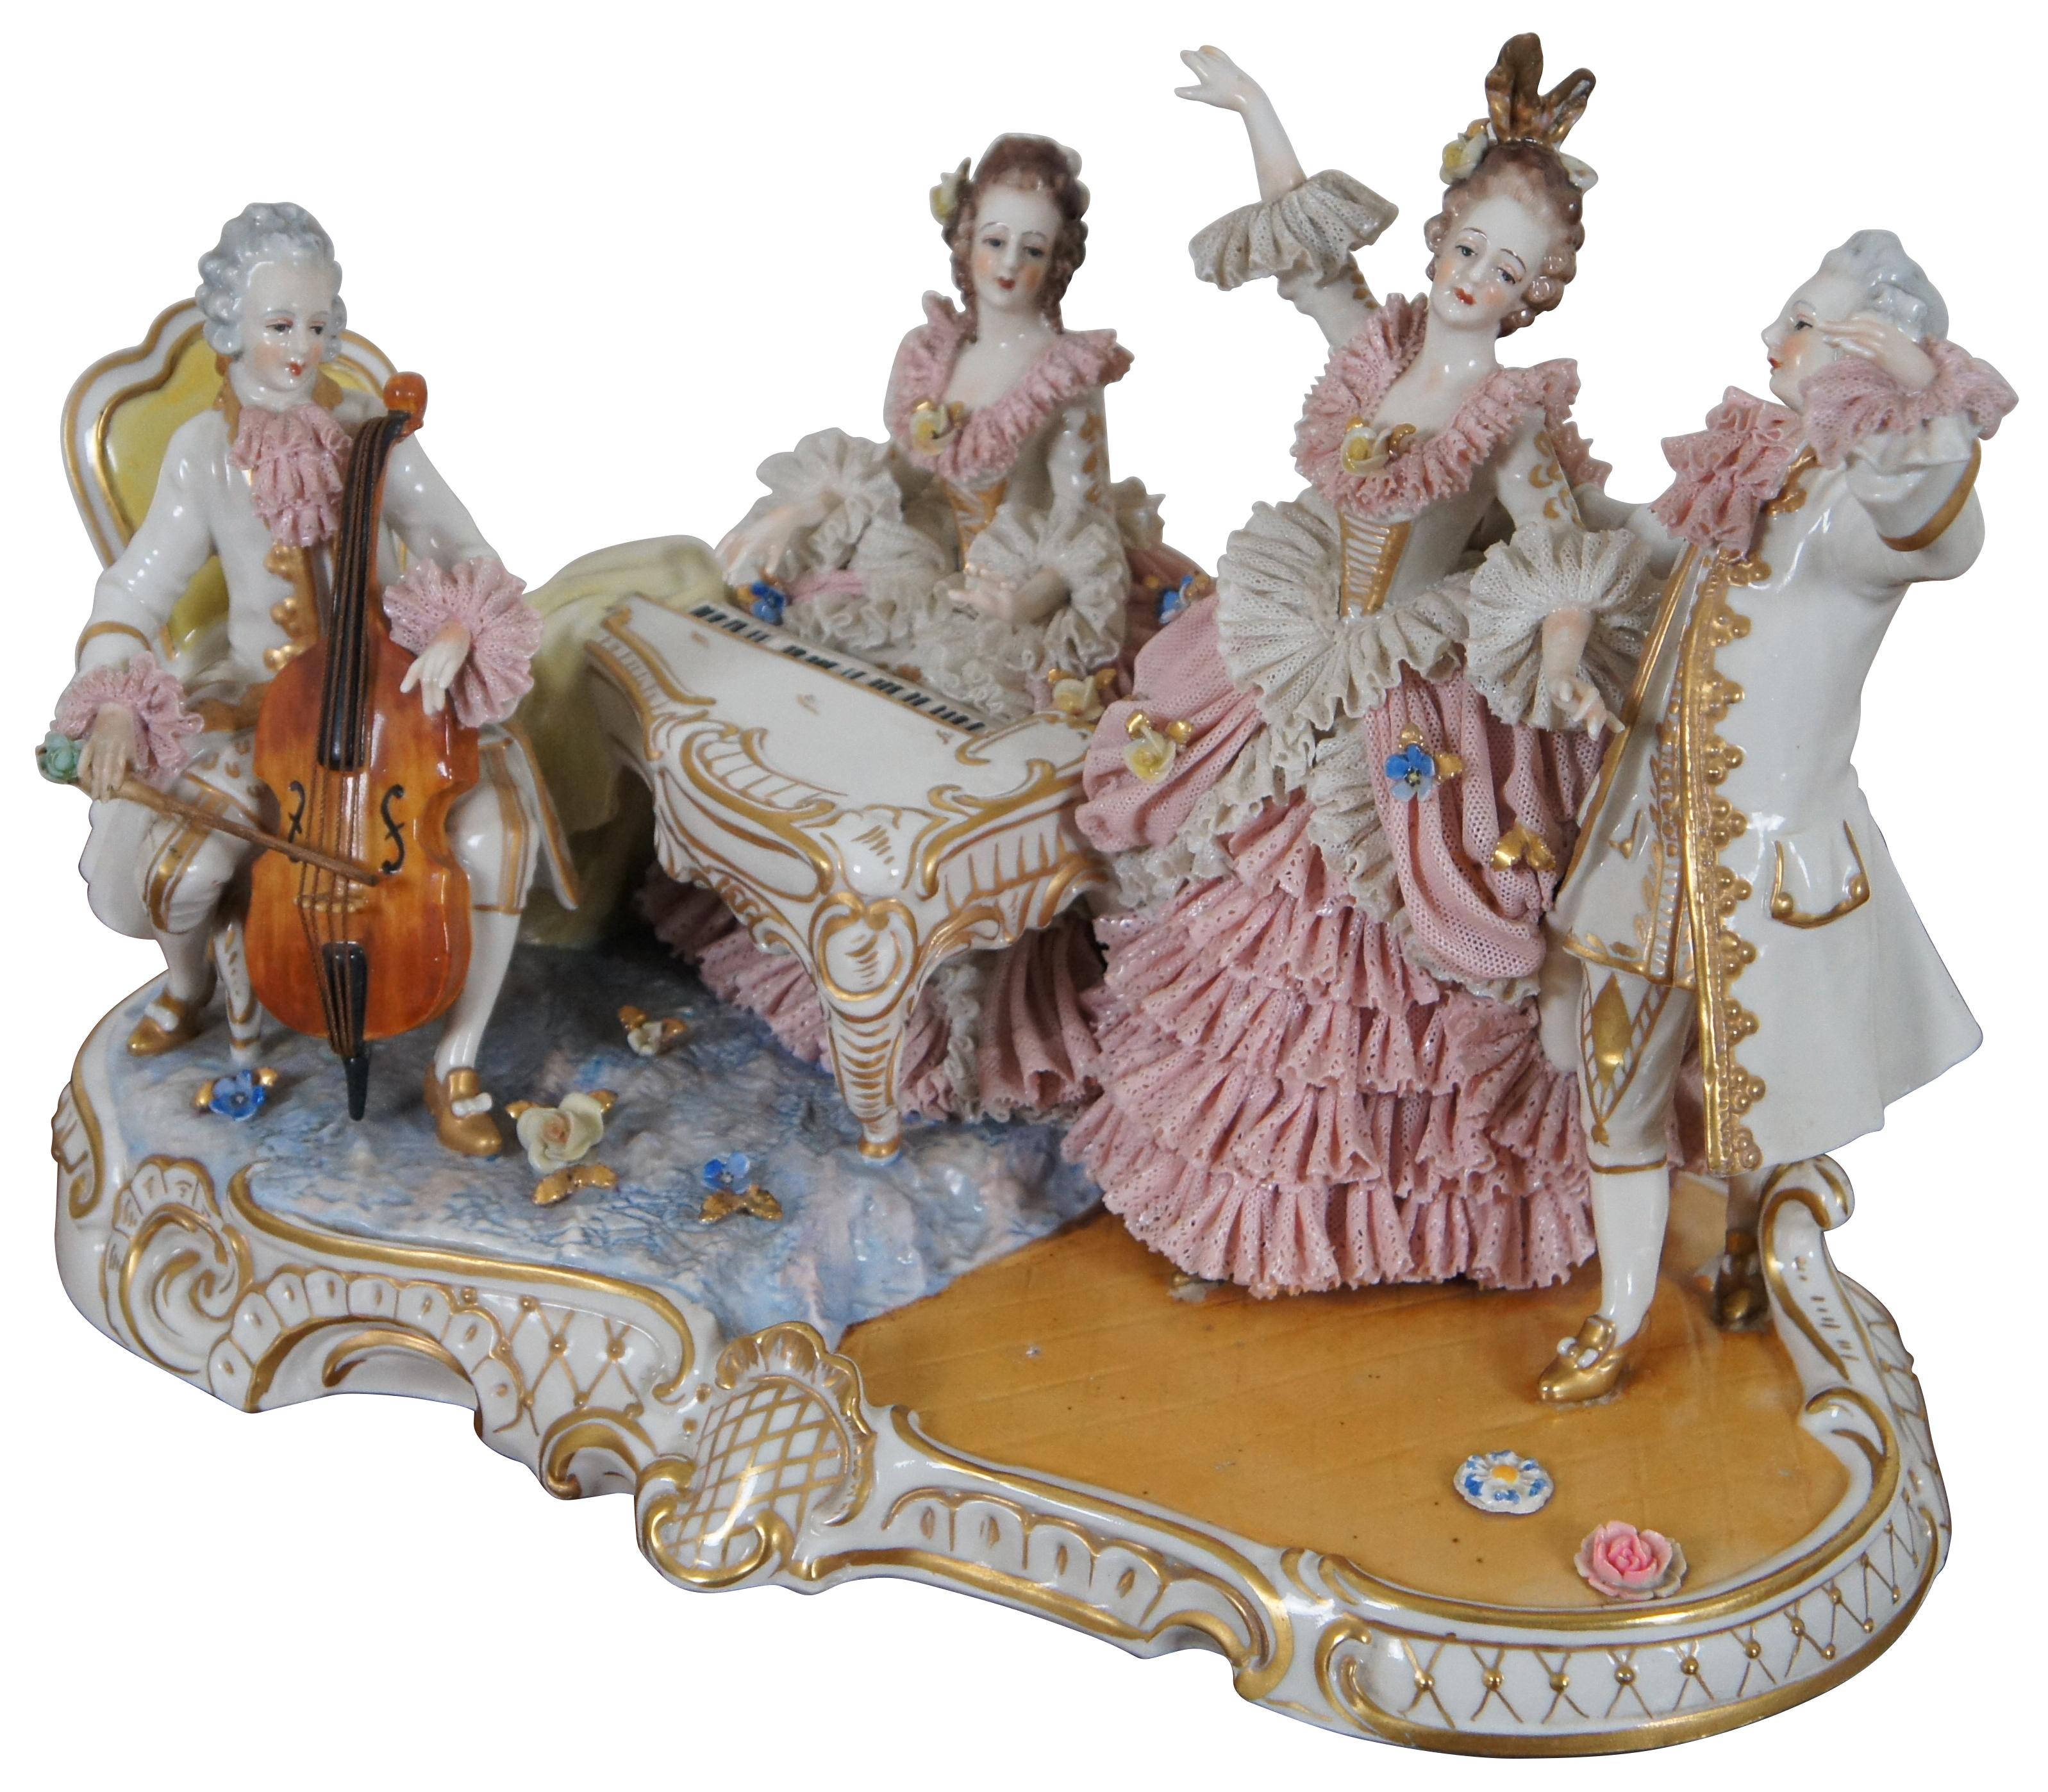 Antike Dresdner Capodimonte-Figurengruppe aus dem späten 19. Jahrhundert mit zwei Figuren, die Cello und Cembalo/Klavier forte spielen, während zwei andere Figuren tanzen, umhüllt von Volants aus rosa und weißer Porzellanspitze, vergoldeten Akzenten